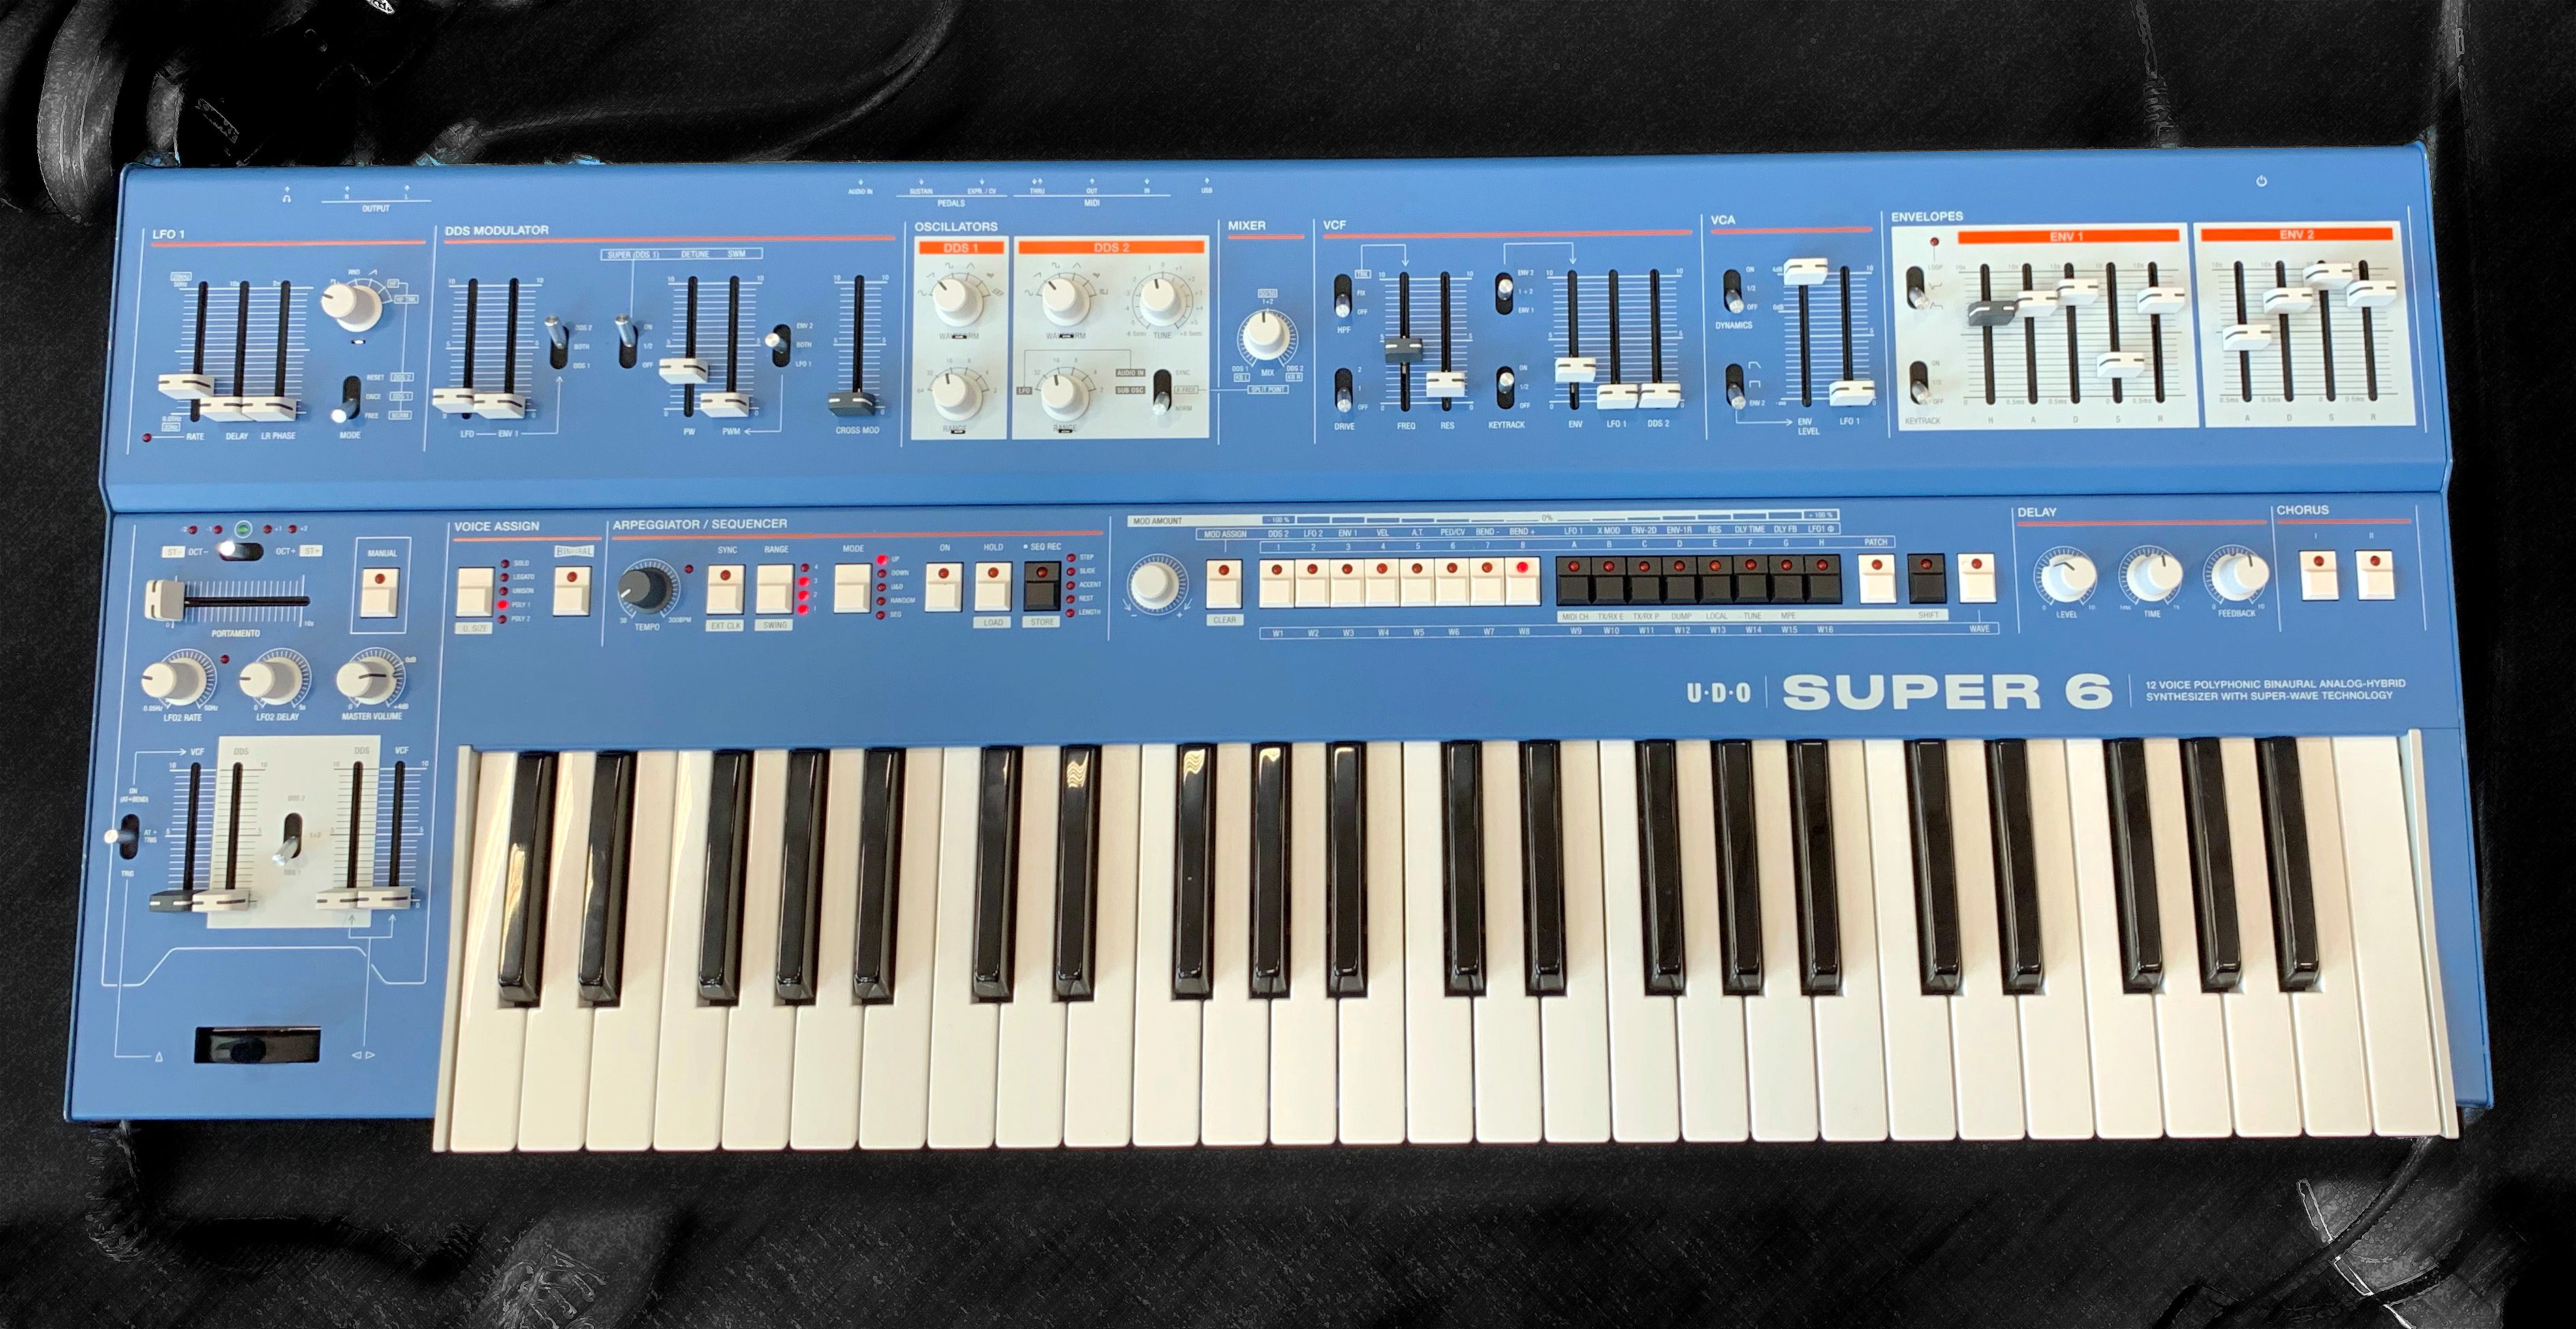 udo-super-6-synthesizer-g.jpeg